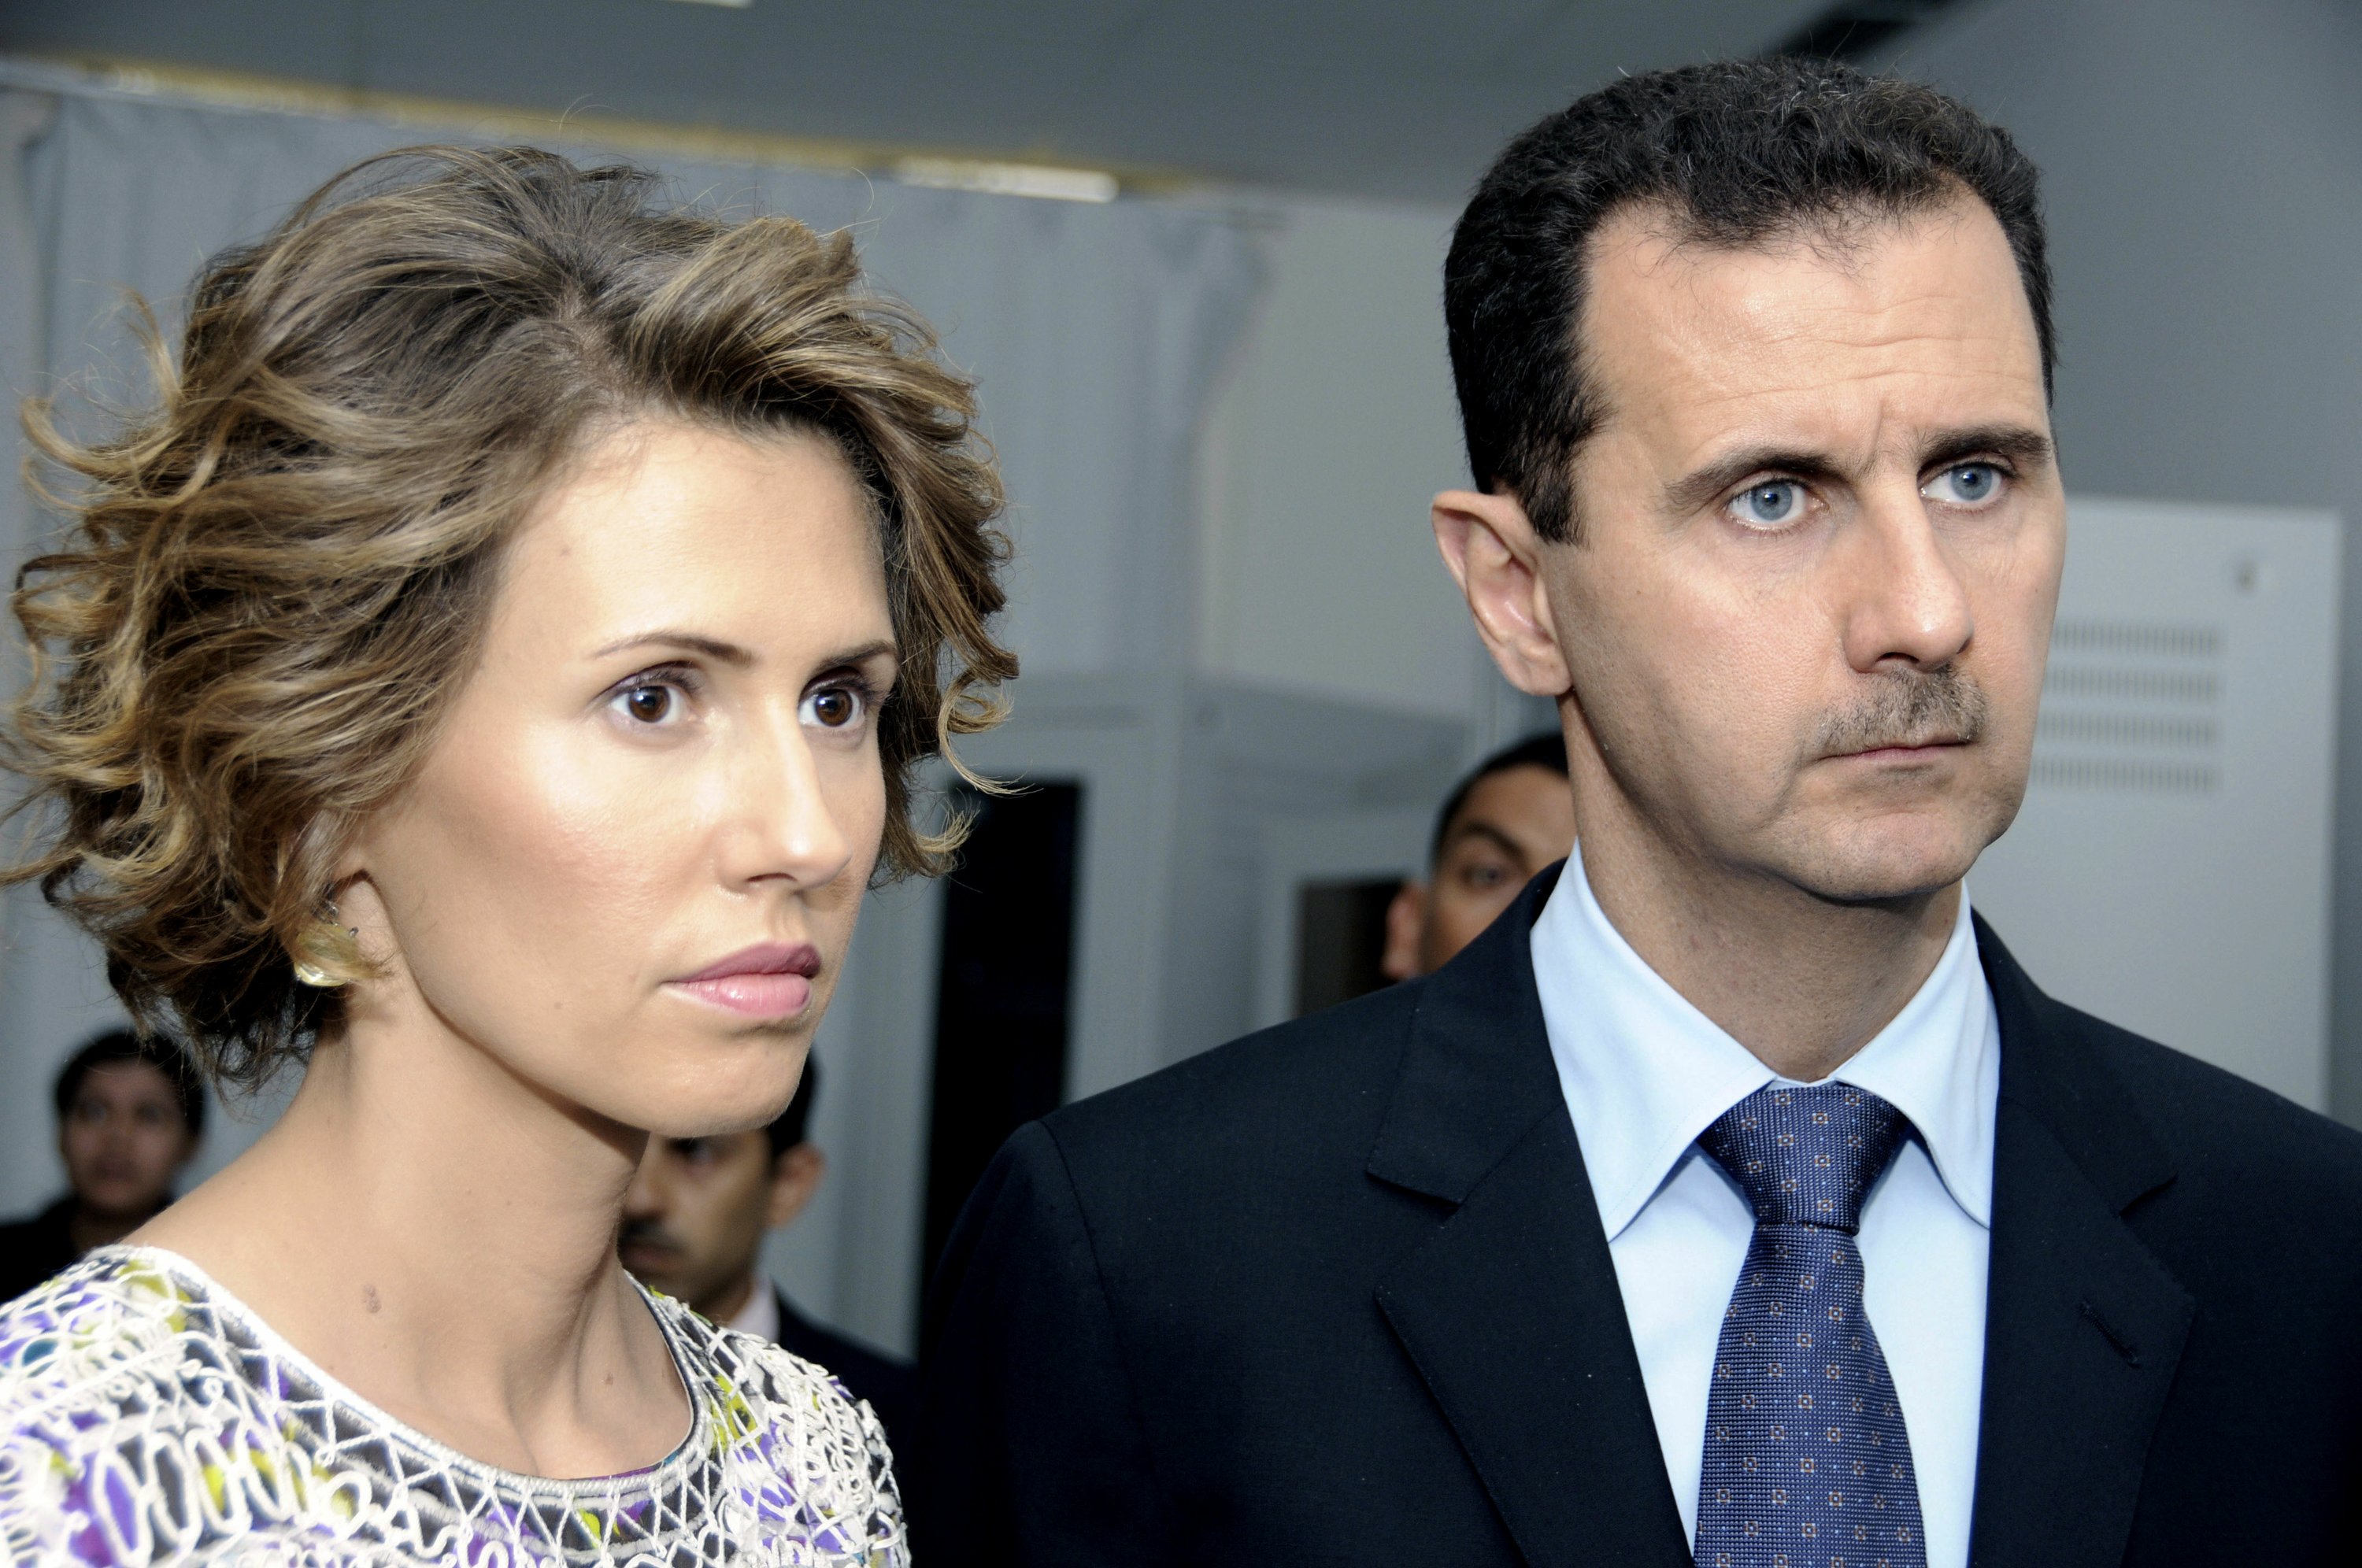 syria-s-assad-an-accidental-heir-proves-resilient-ap-news